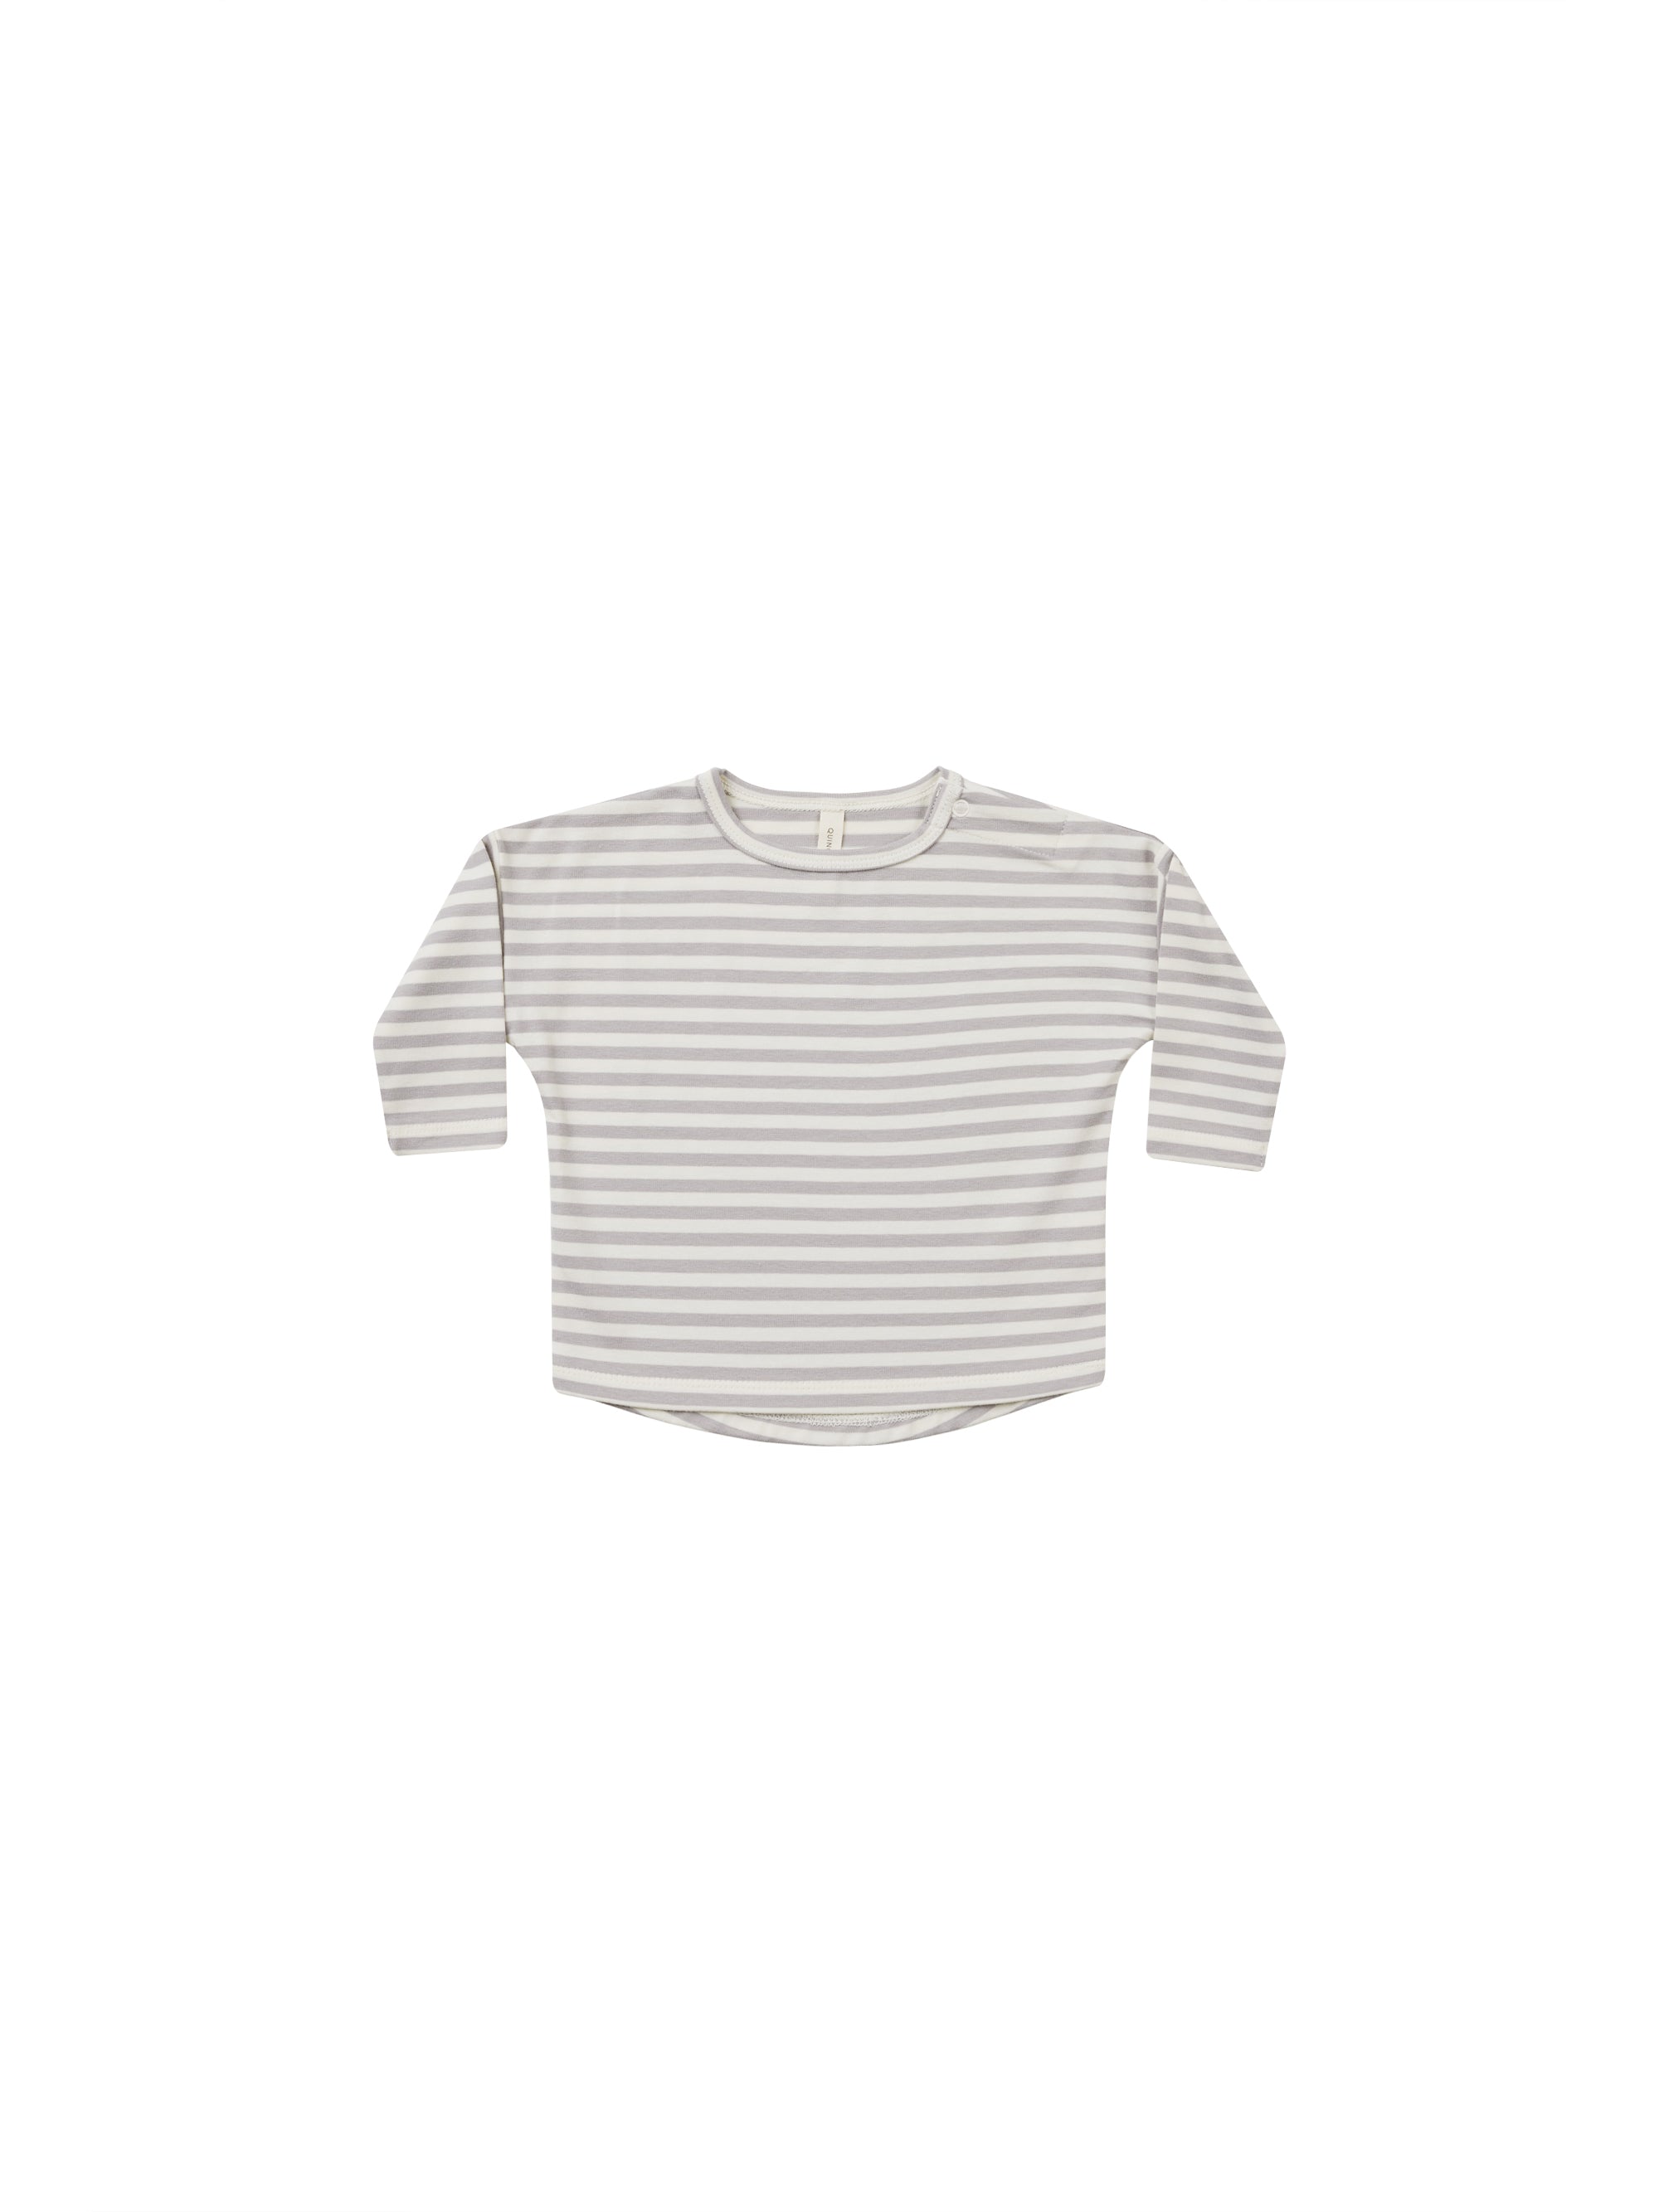 Long Sleeve Tee || Periwinkle Stripe